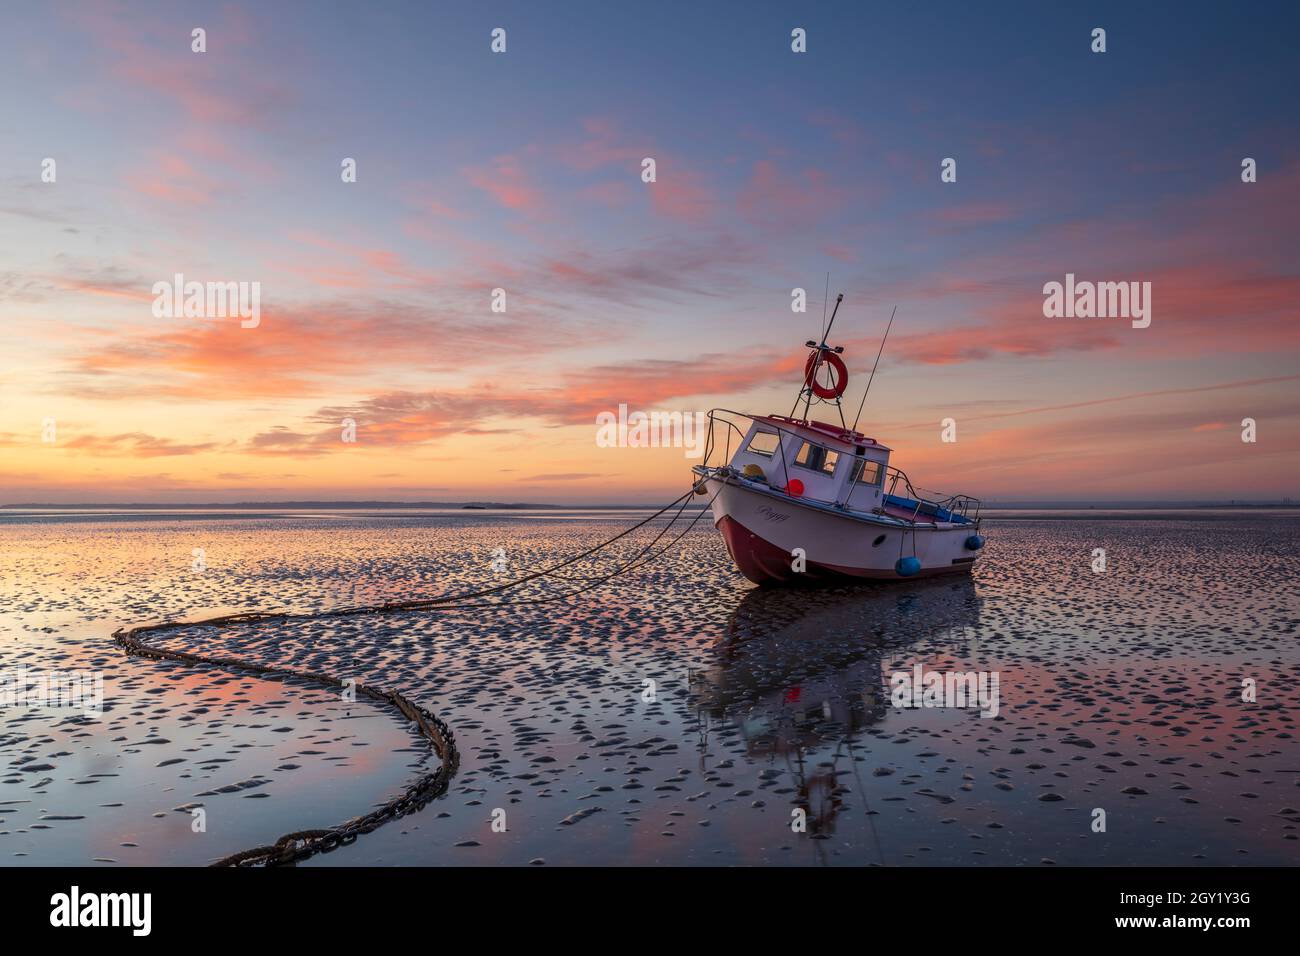 Thorpe Bay sunrise Stock Photo - Alamy